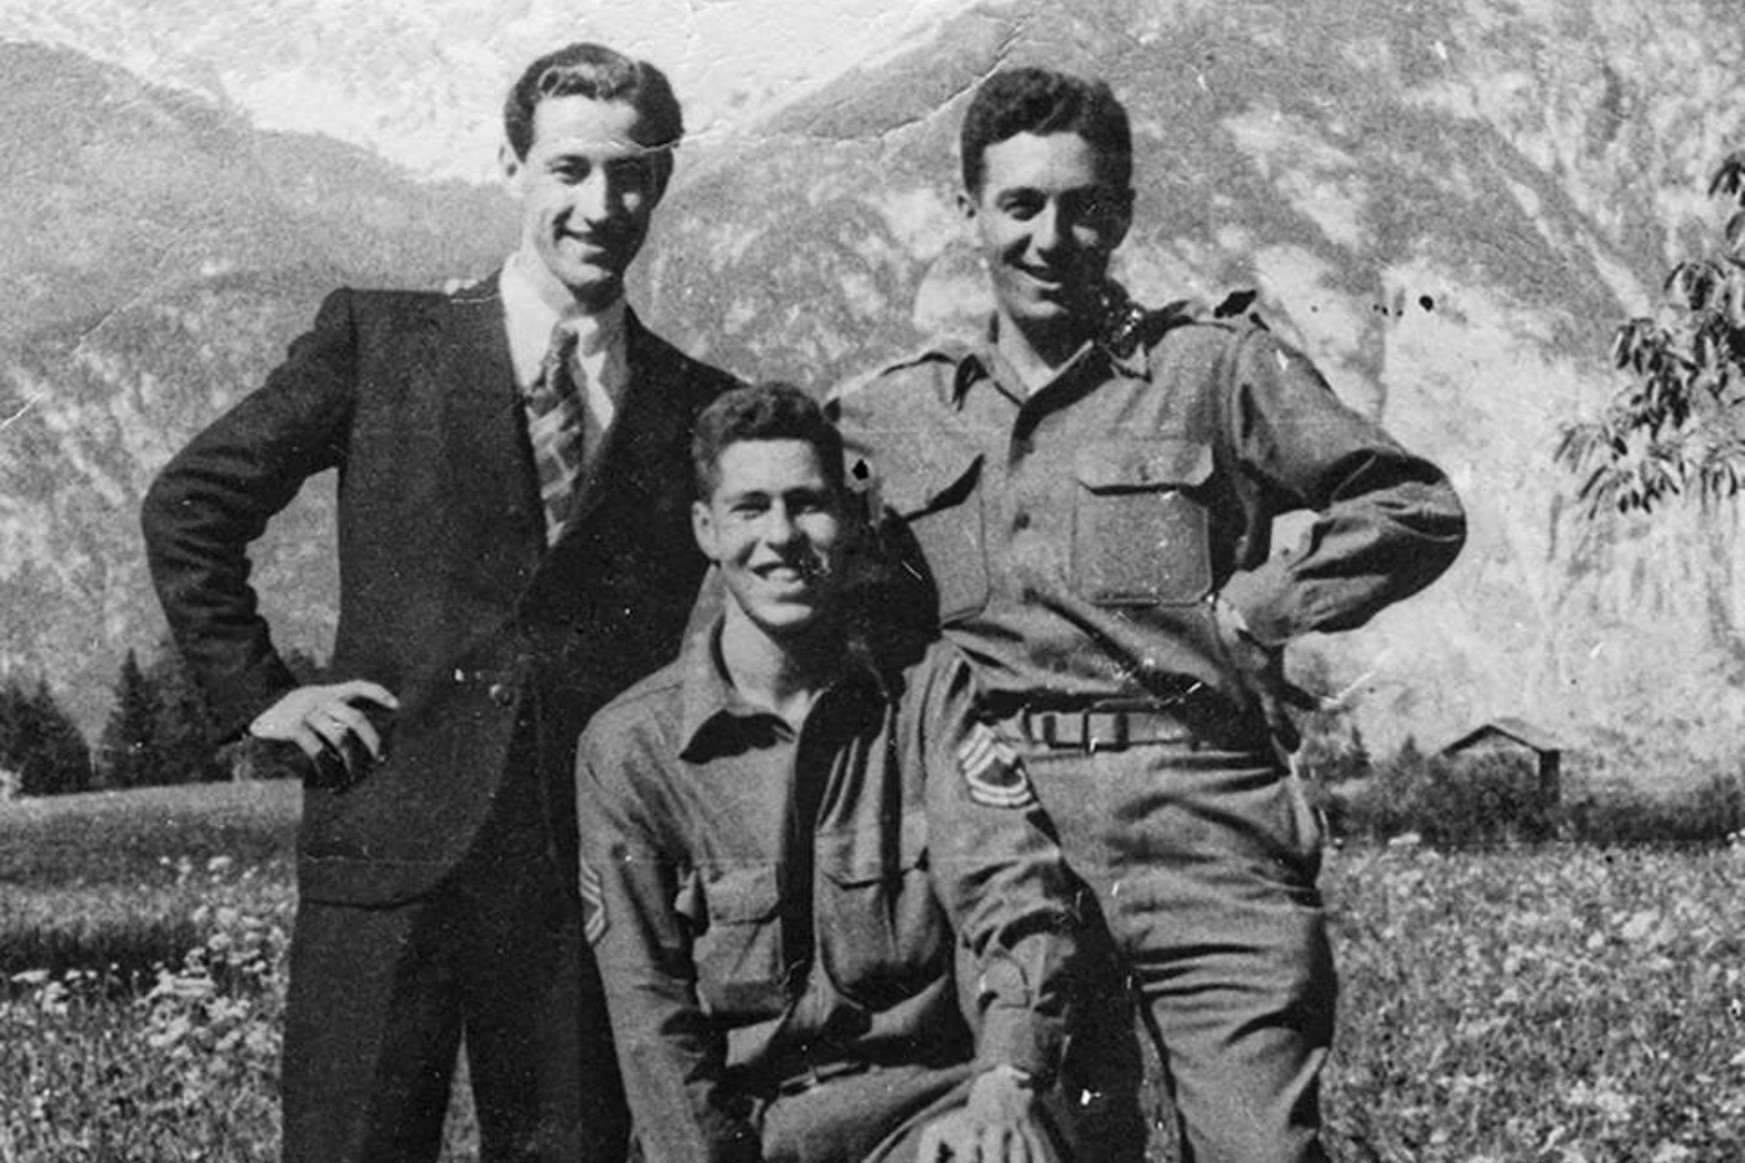 Az igazi becstelen briganty: a zsidó kém, aki beépült a német katonák közé, majd fogságból tető alá hozott egy fegyverletételt